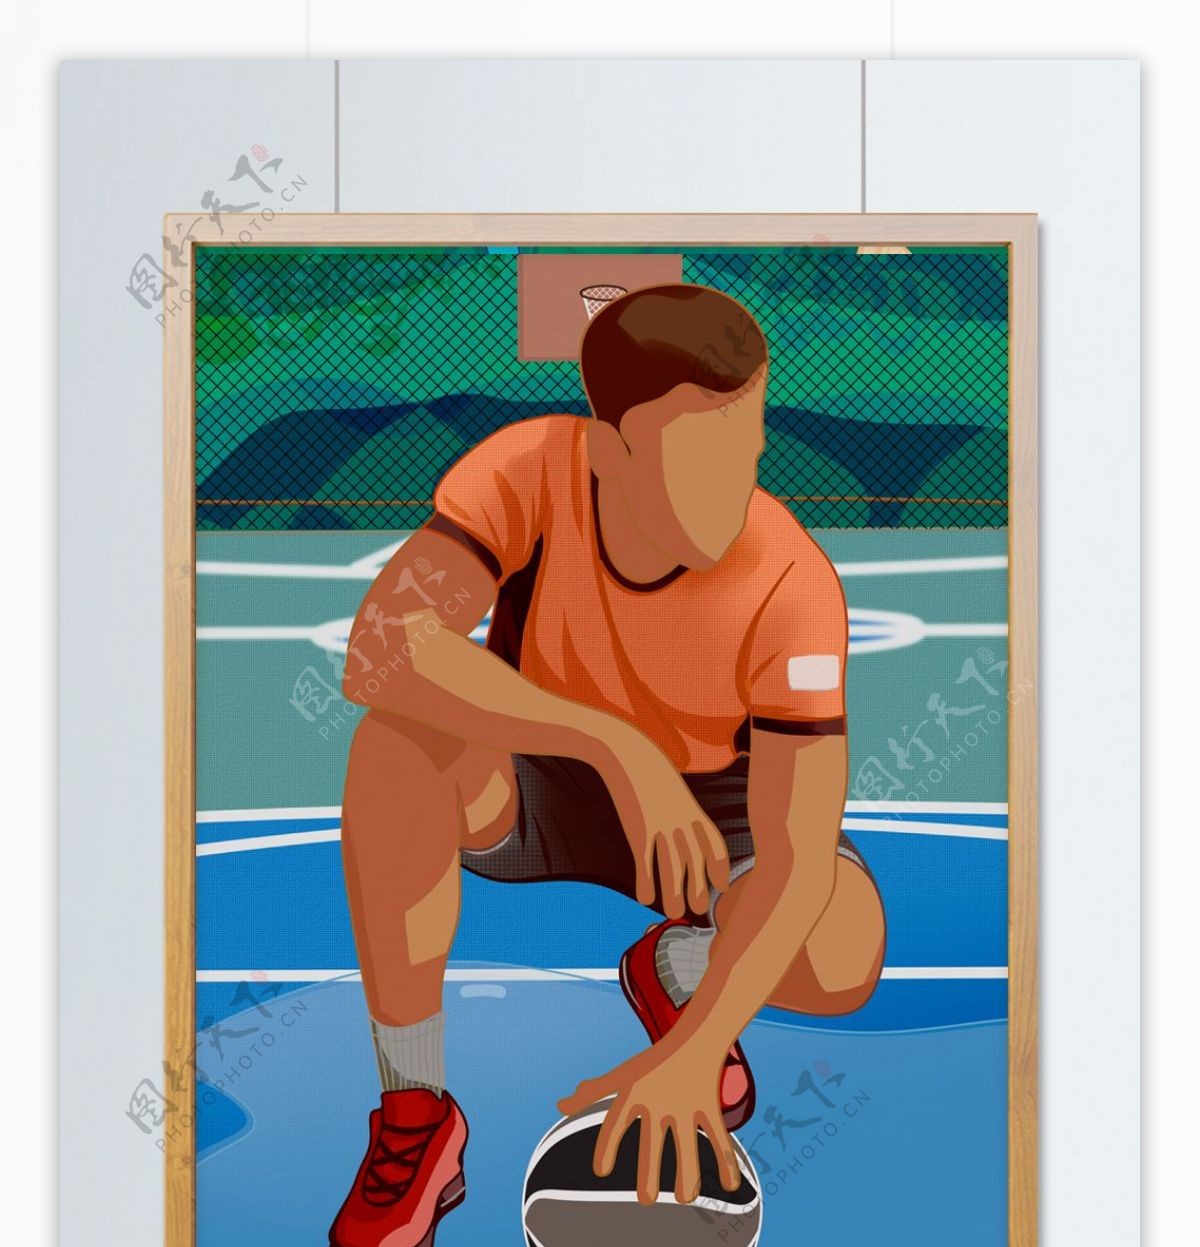 肌理插画国际篮球日球场运动员那篮球休息